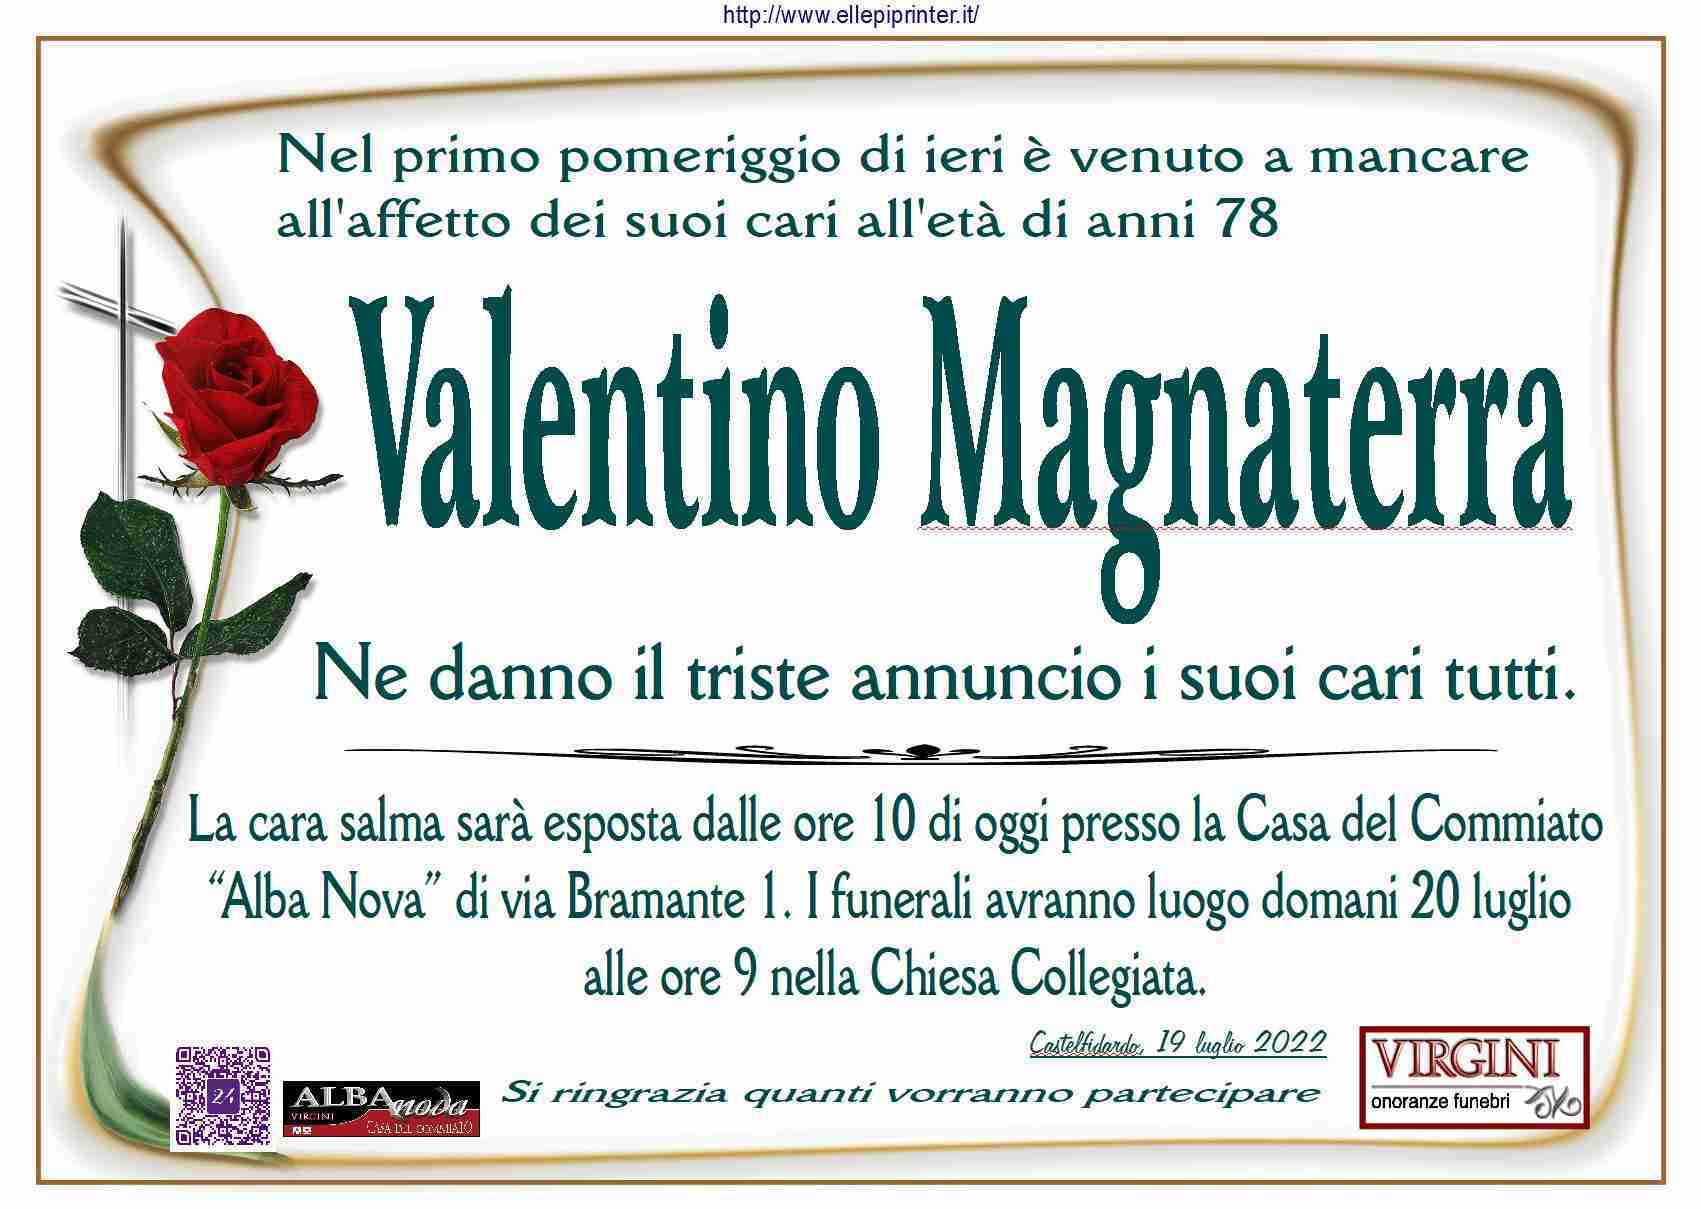 Valentino Magnaterra